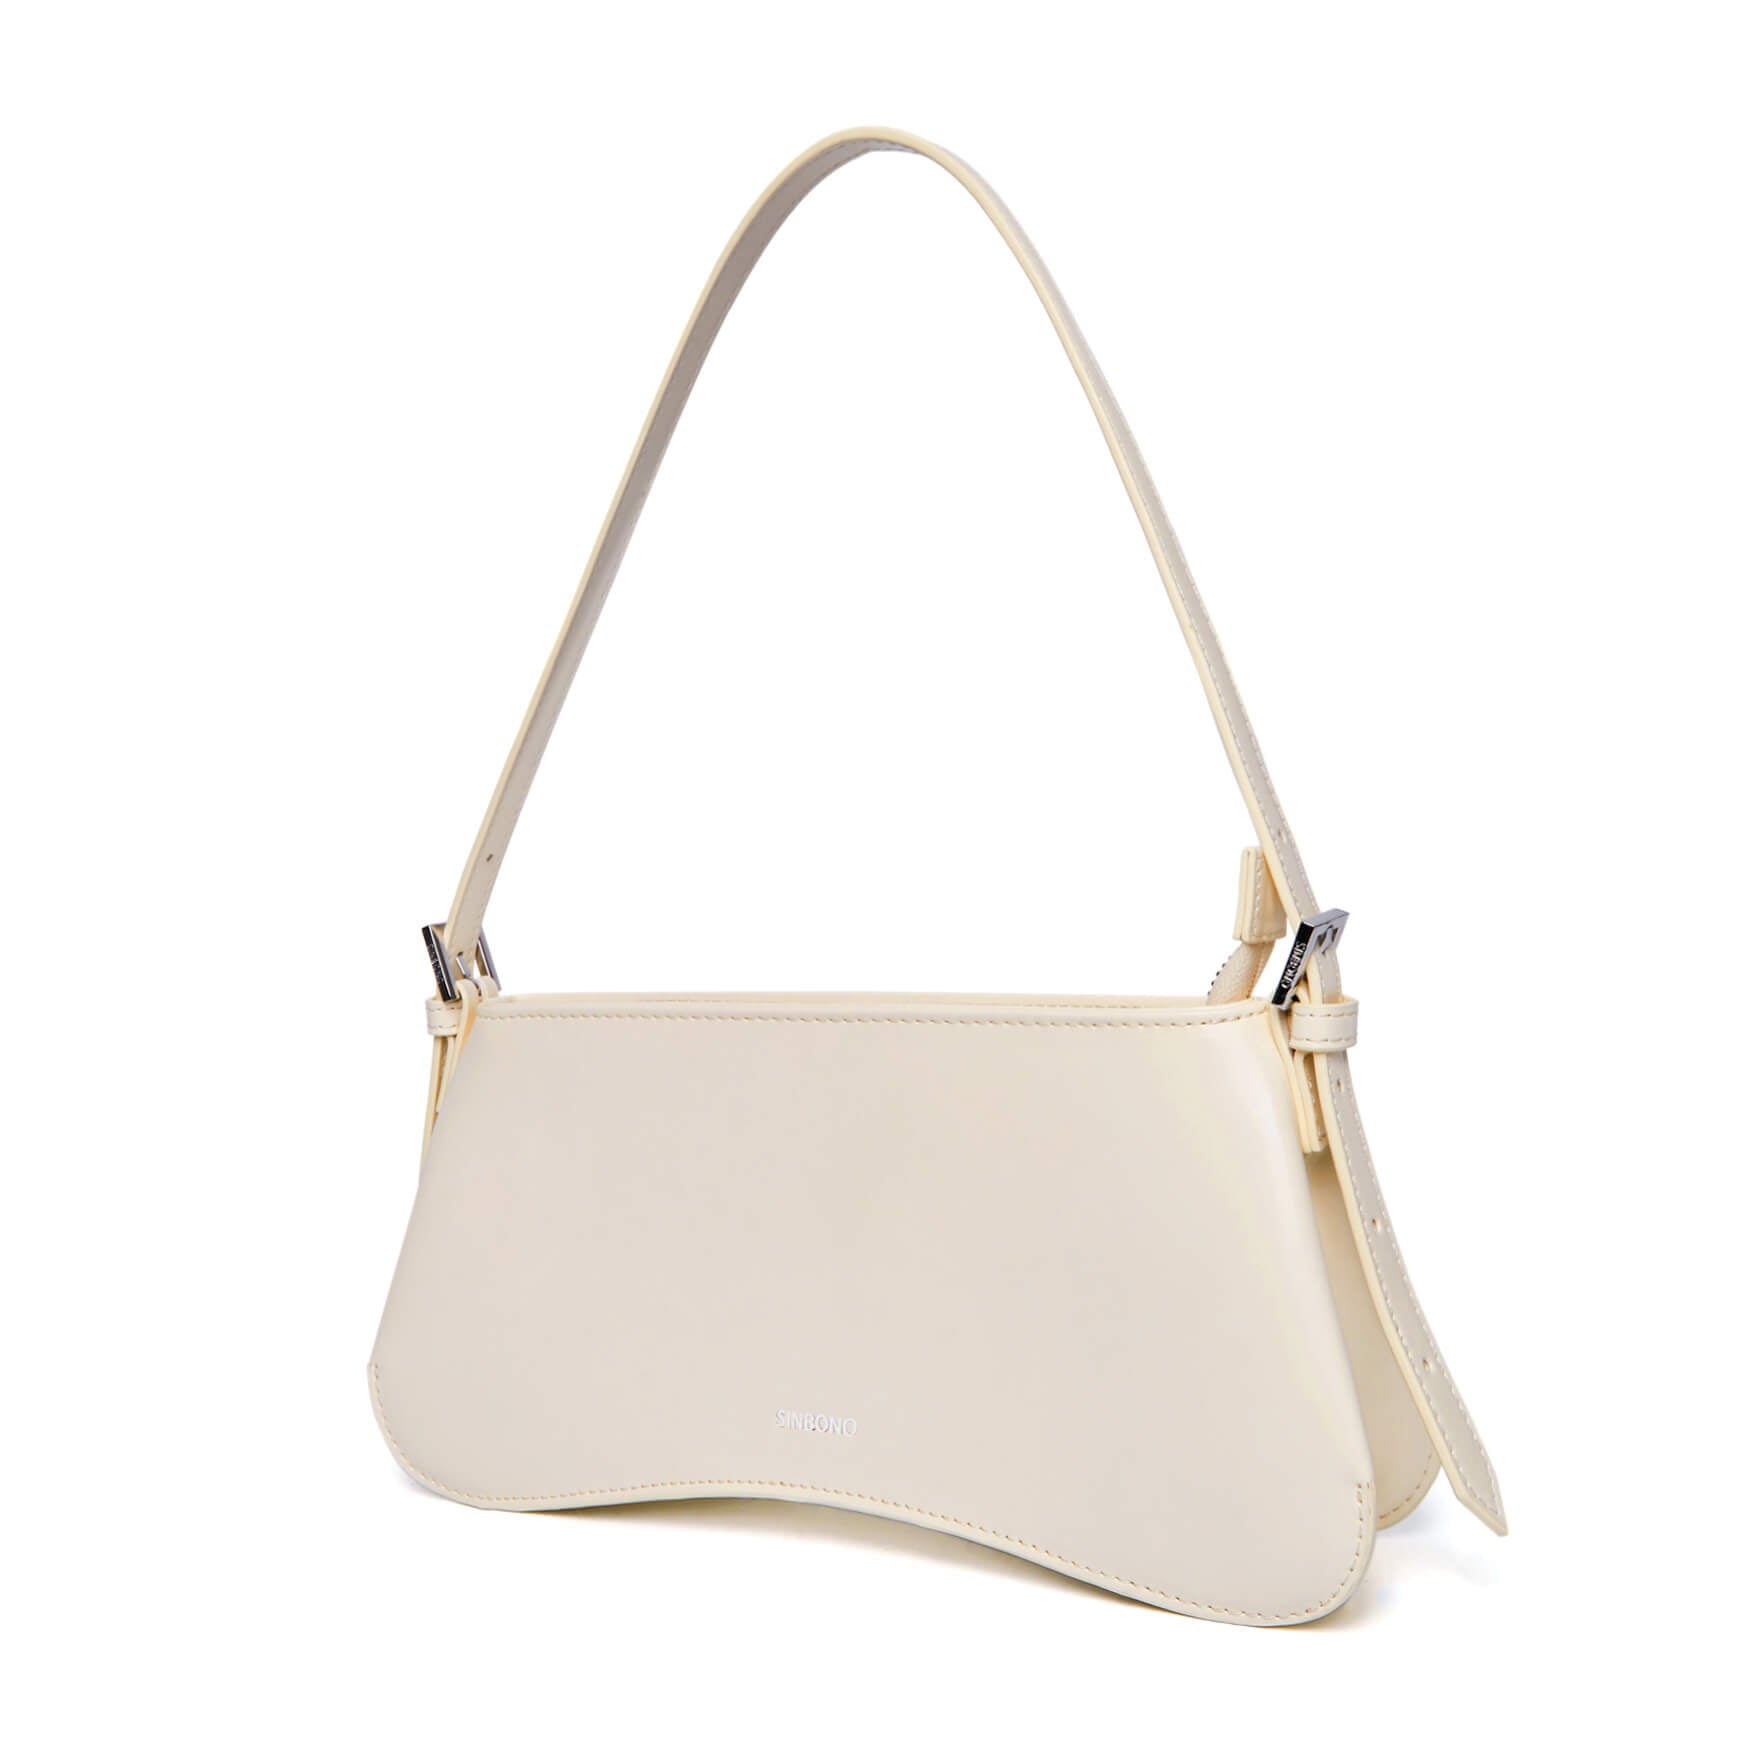 SINBONO Eva Shoulder Bag White - Vegan Leather Shoulder Bag